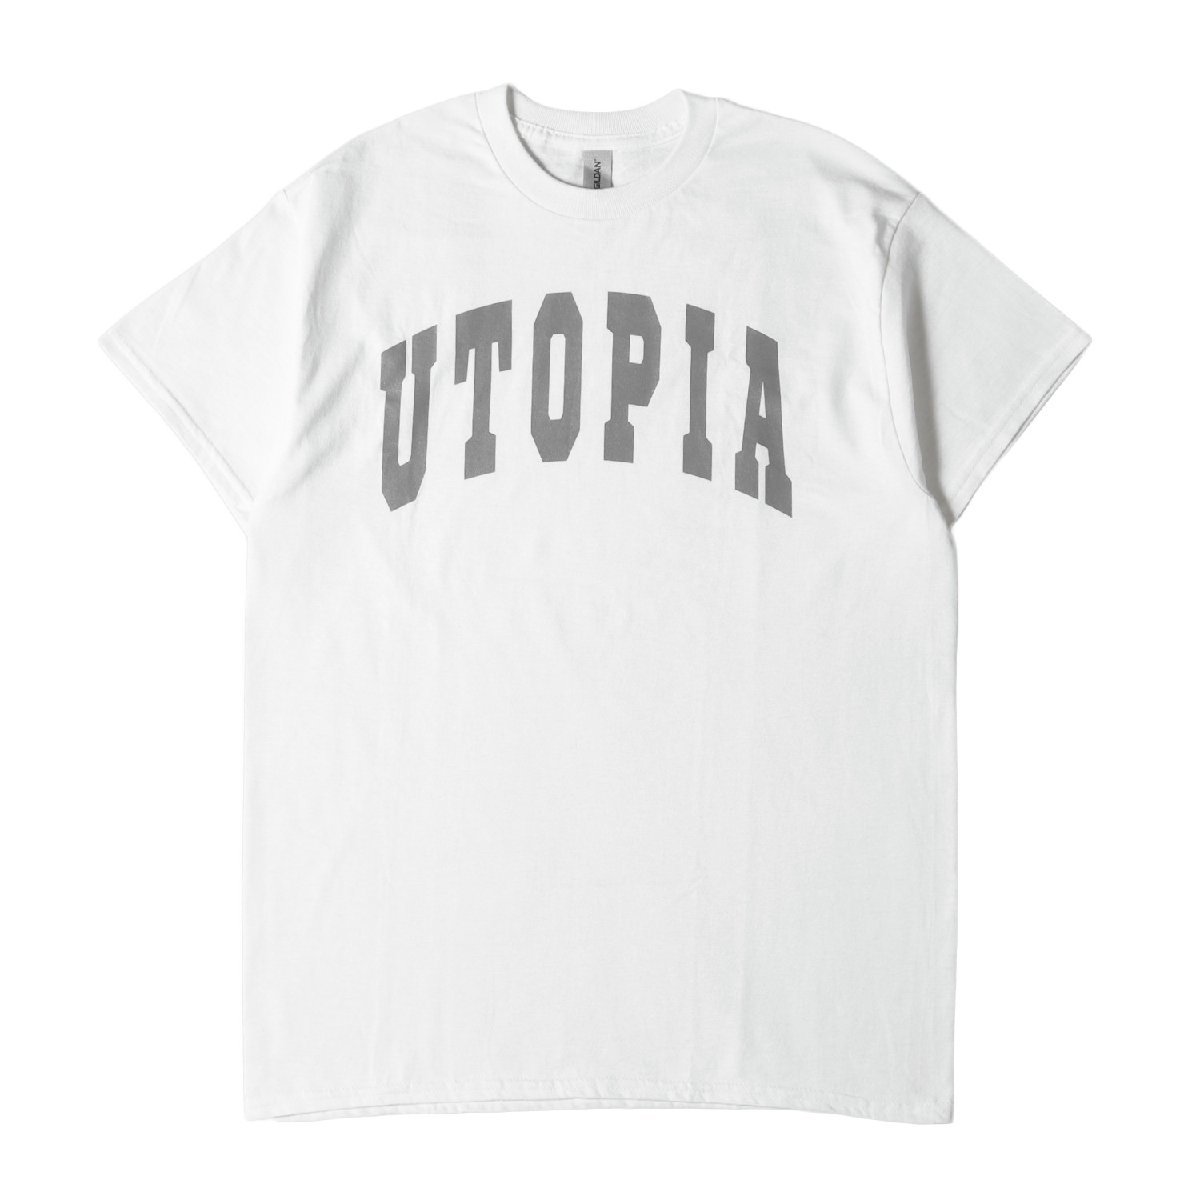 新品 Etavirp. エタヴァープ Tシャツ サイズ:M UTOPIA ロゴ クルーネック 半袖 Tシャツ Utopia Tee ホワイト 白 トップス カットソー_画像1